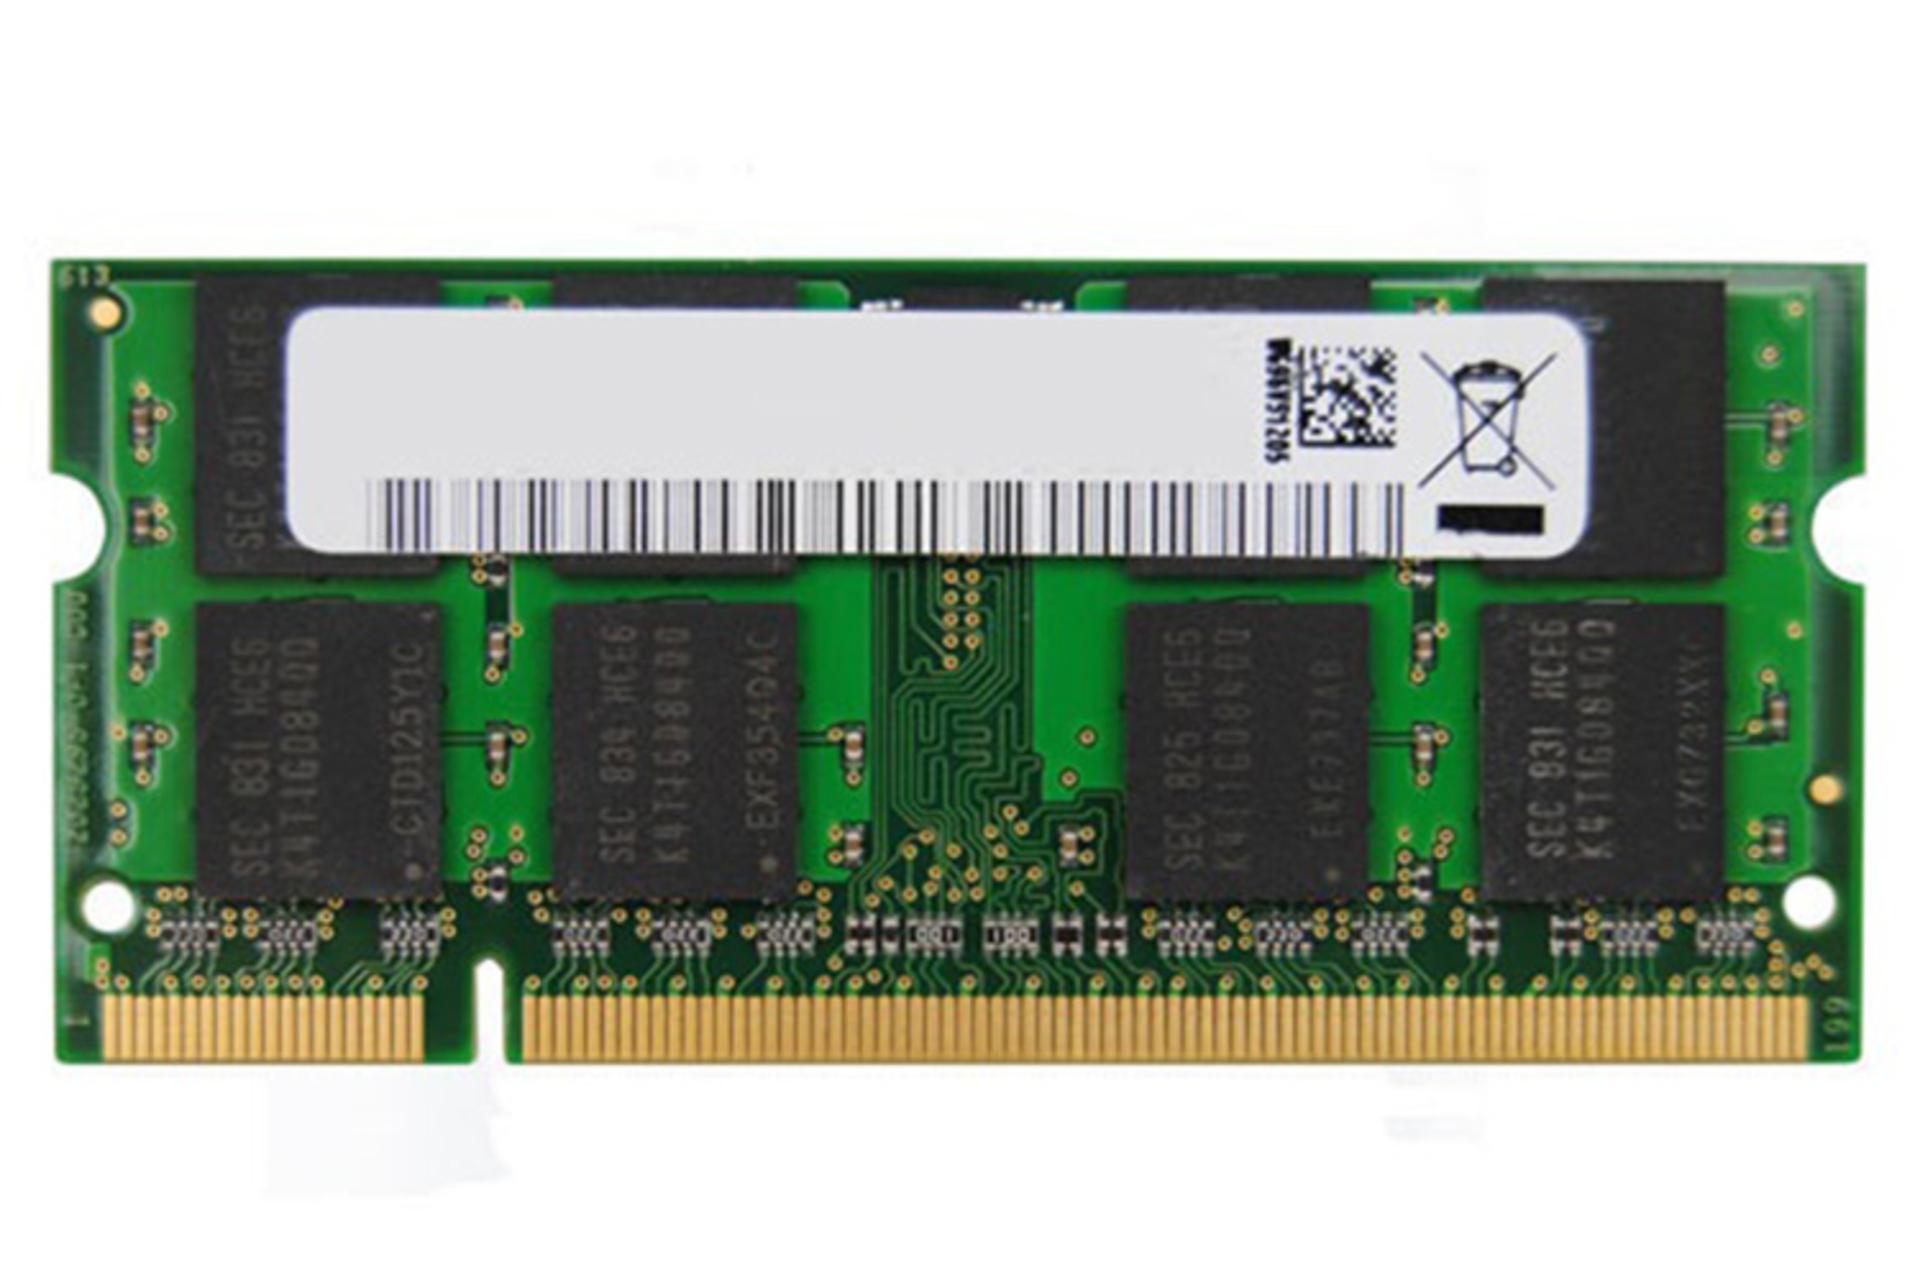 رم کینگ مکس KINGMAX KSDE88F-B8MO5-MNE 2GB DDR2-800 CL5